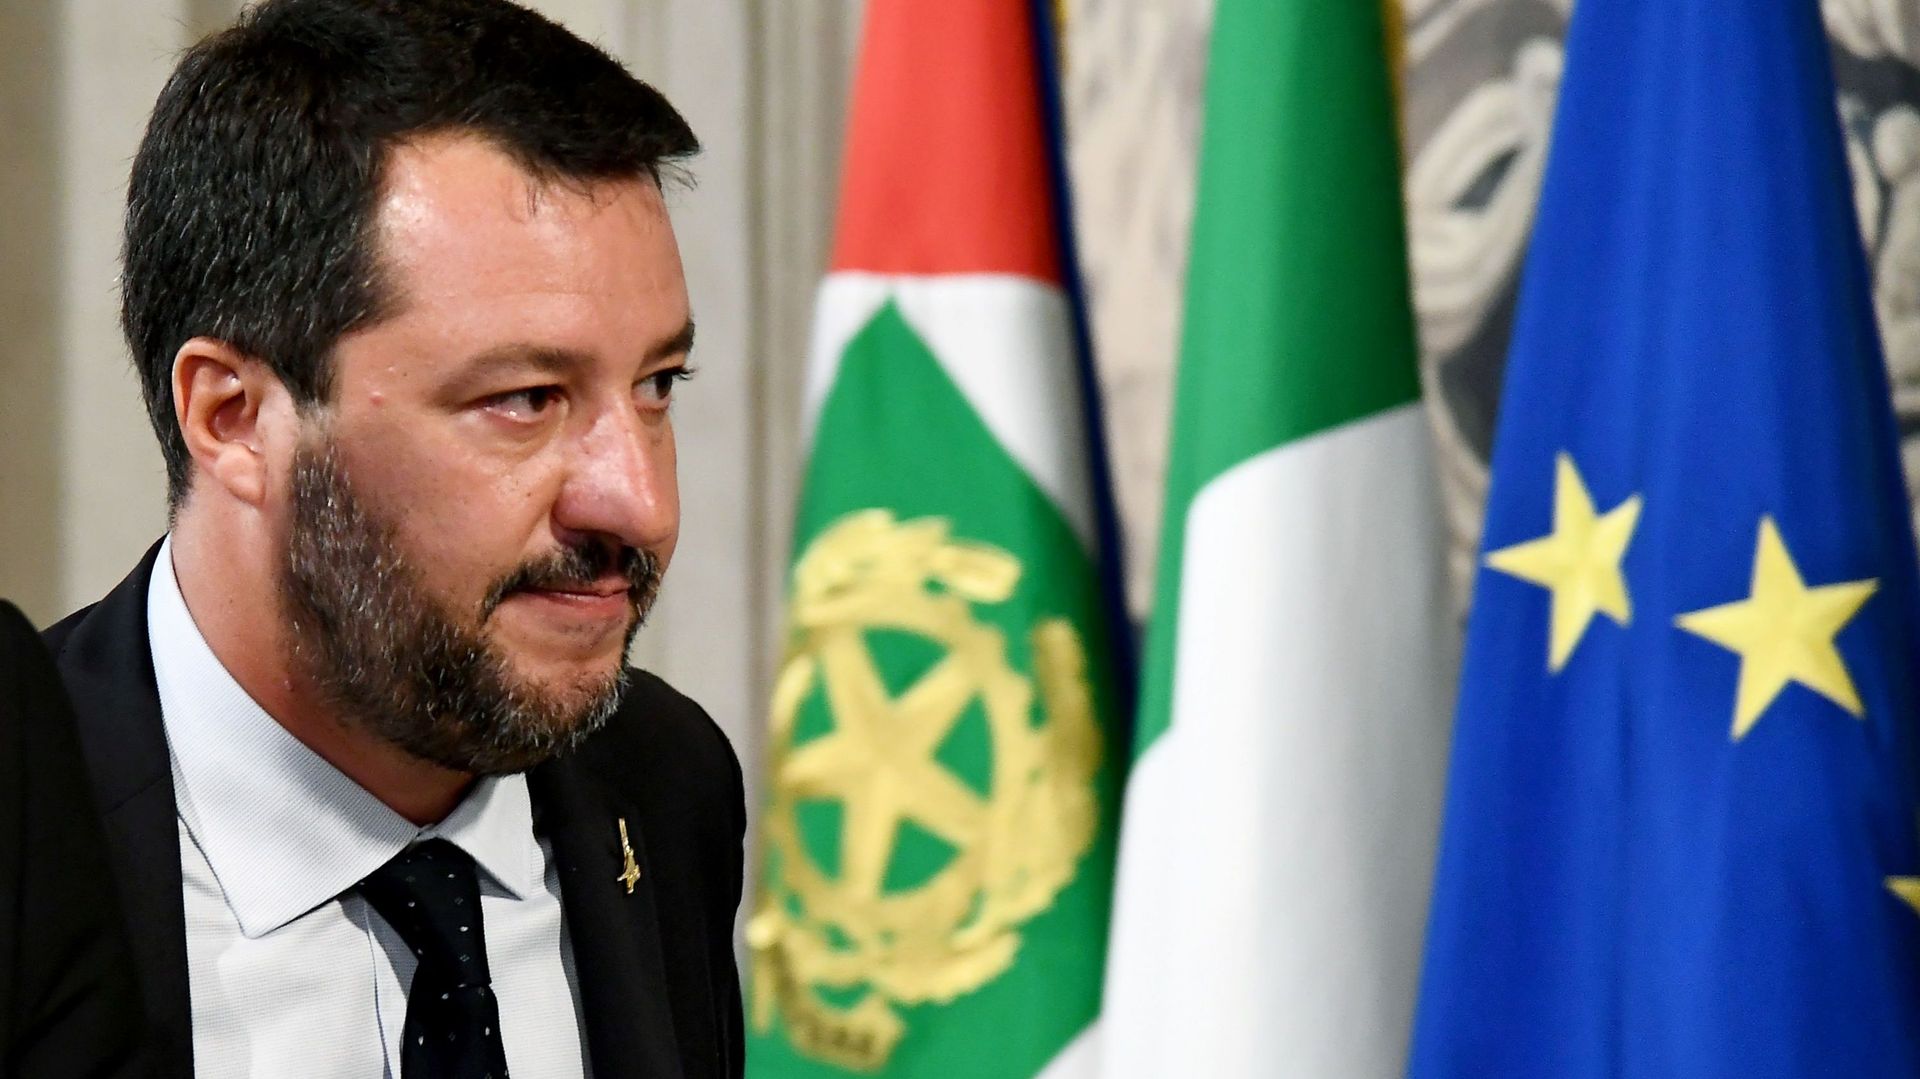 L'Italie attend toujours une majorité pour éviter des élections anticipées, la Ligue en perte de vitesse